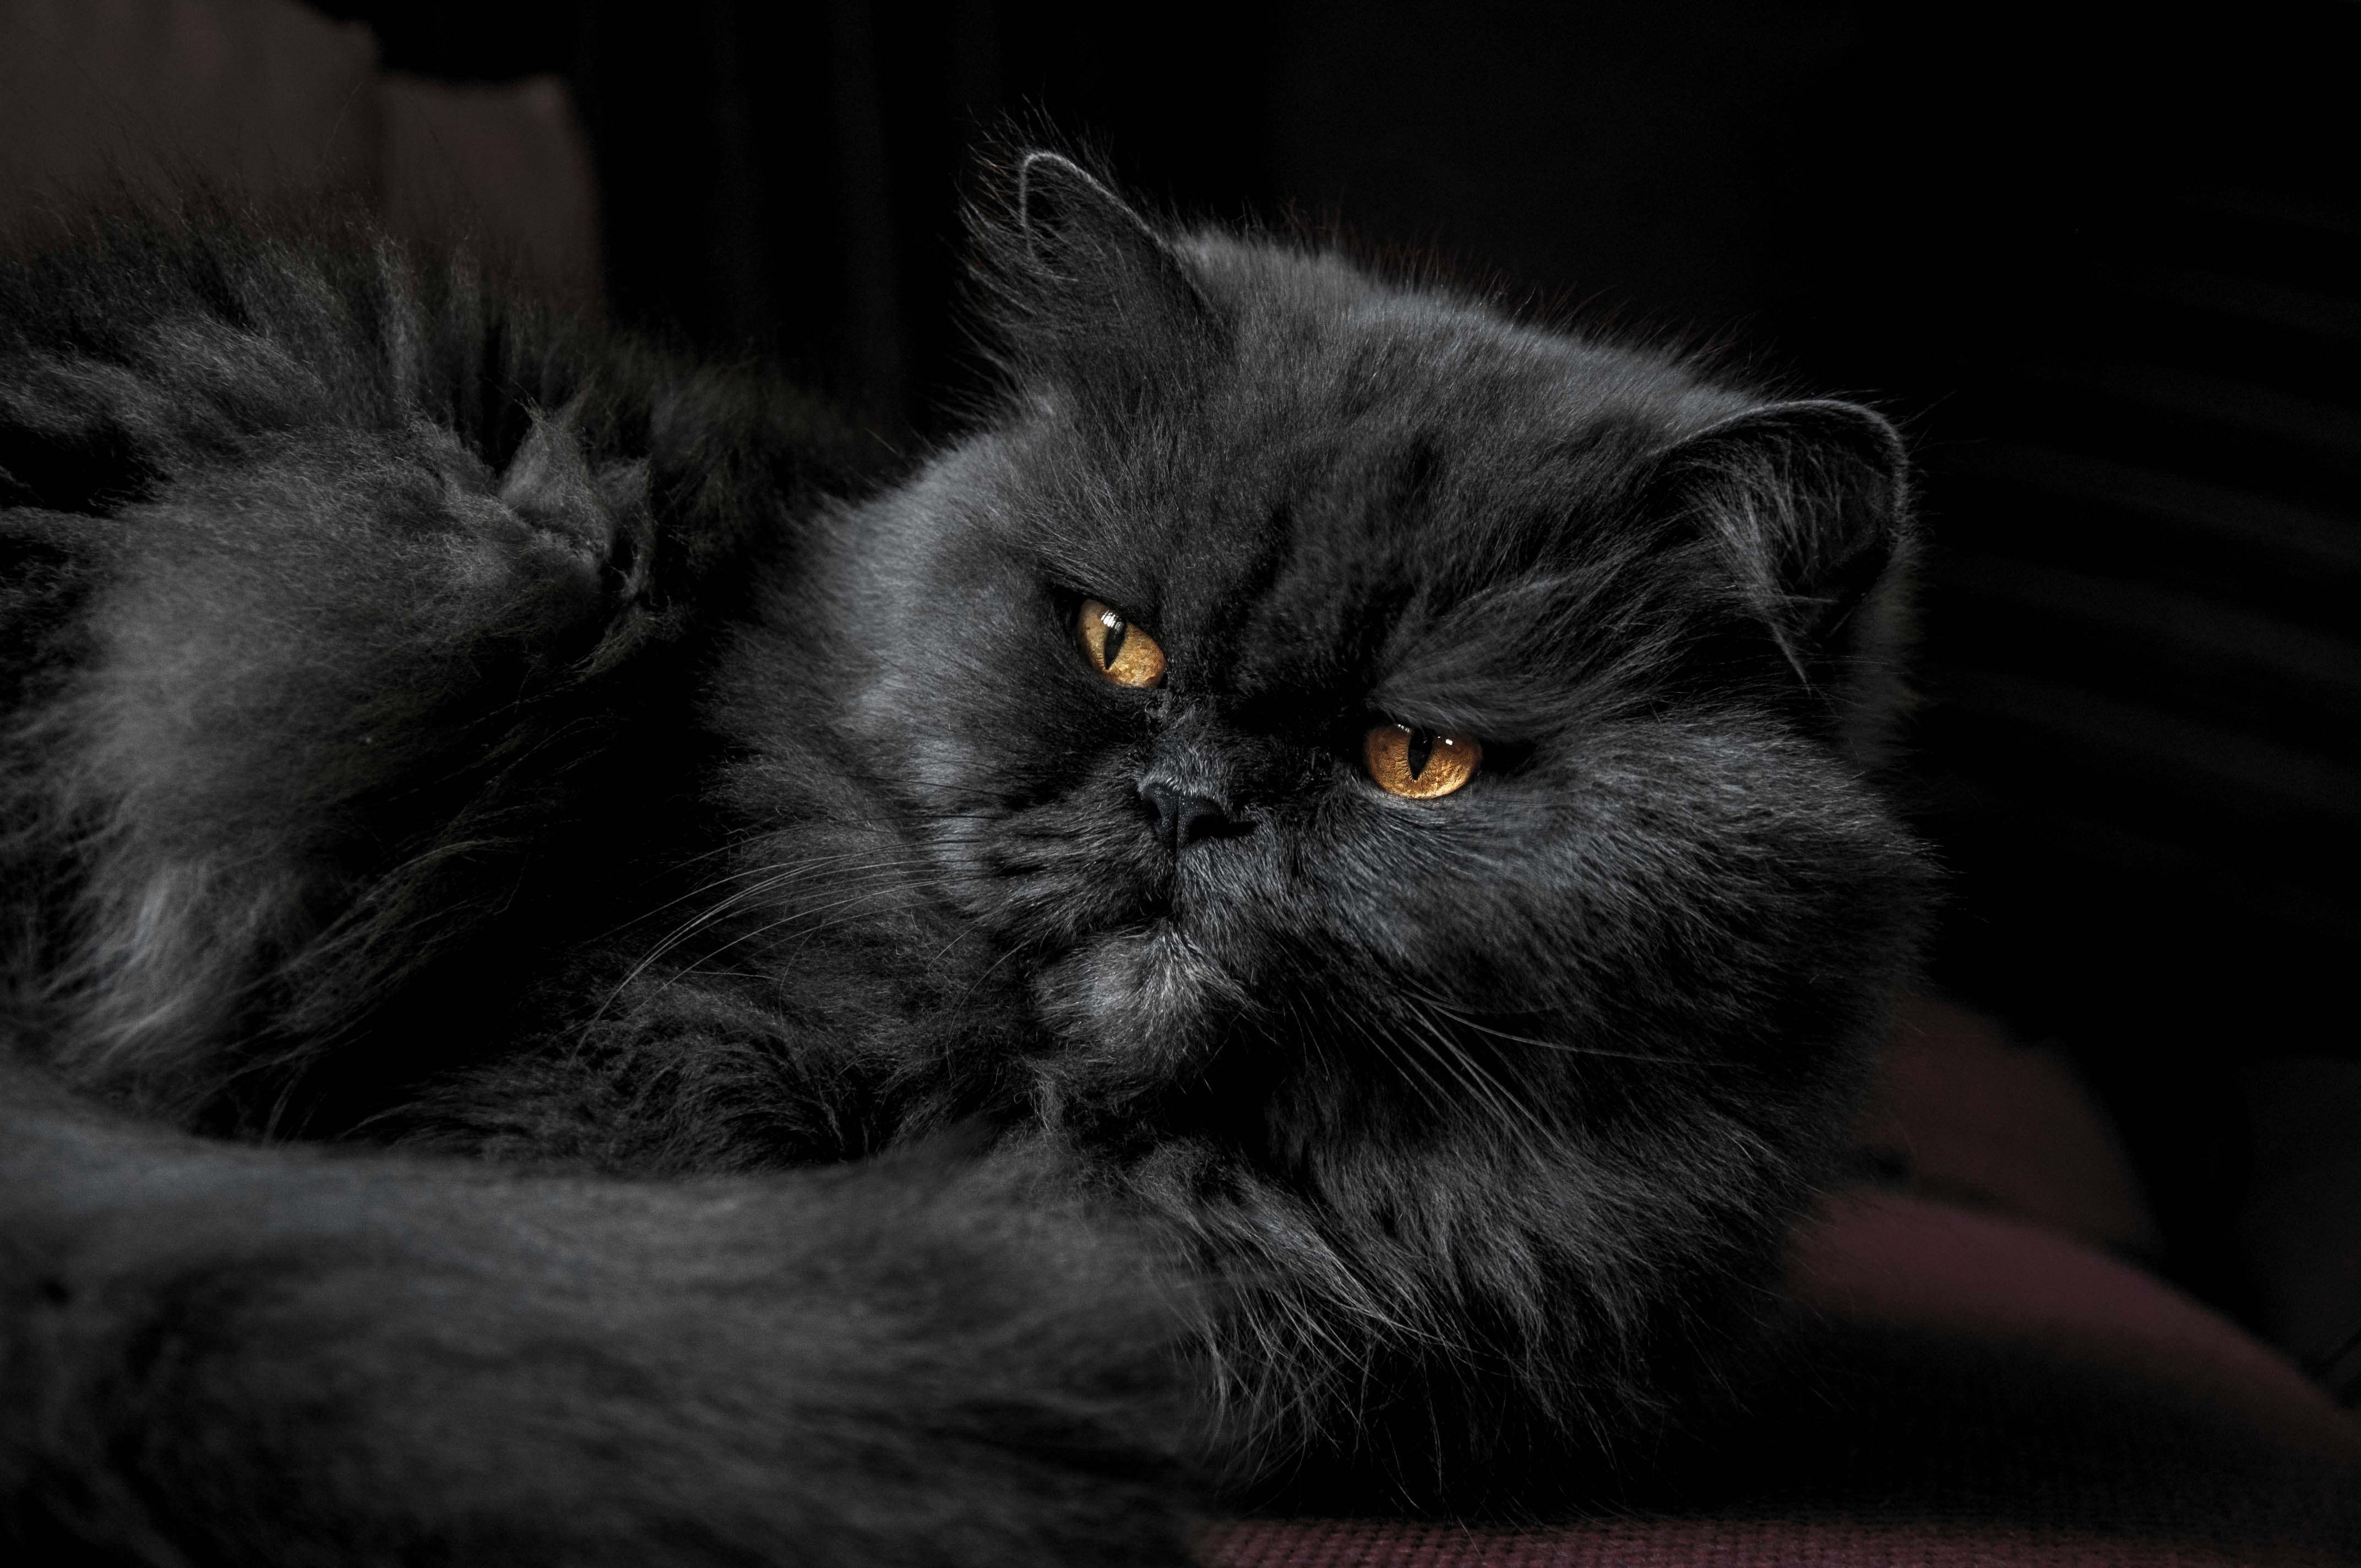 himalayan cat grey